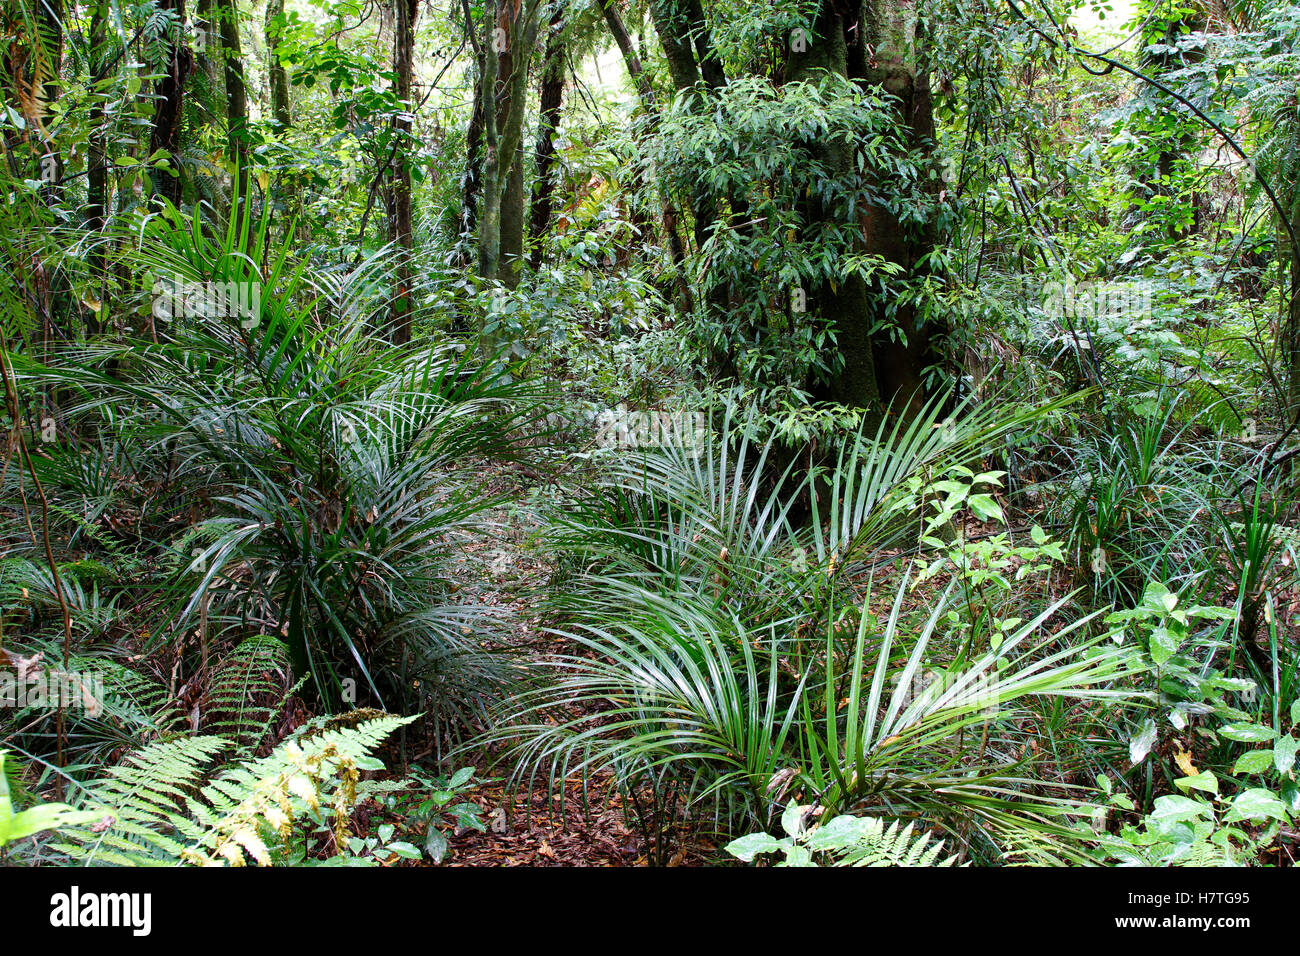 Feuillage vert luxuriant en jungle tropicale Banque D'Images